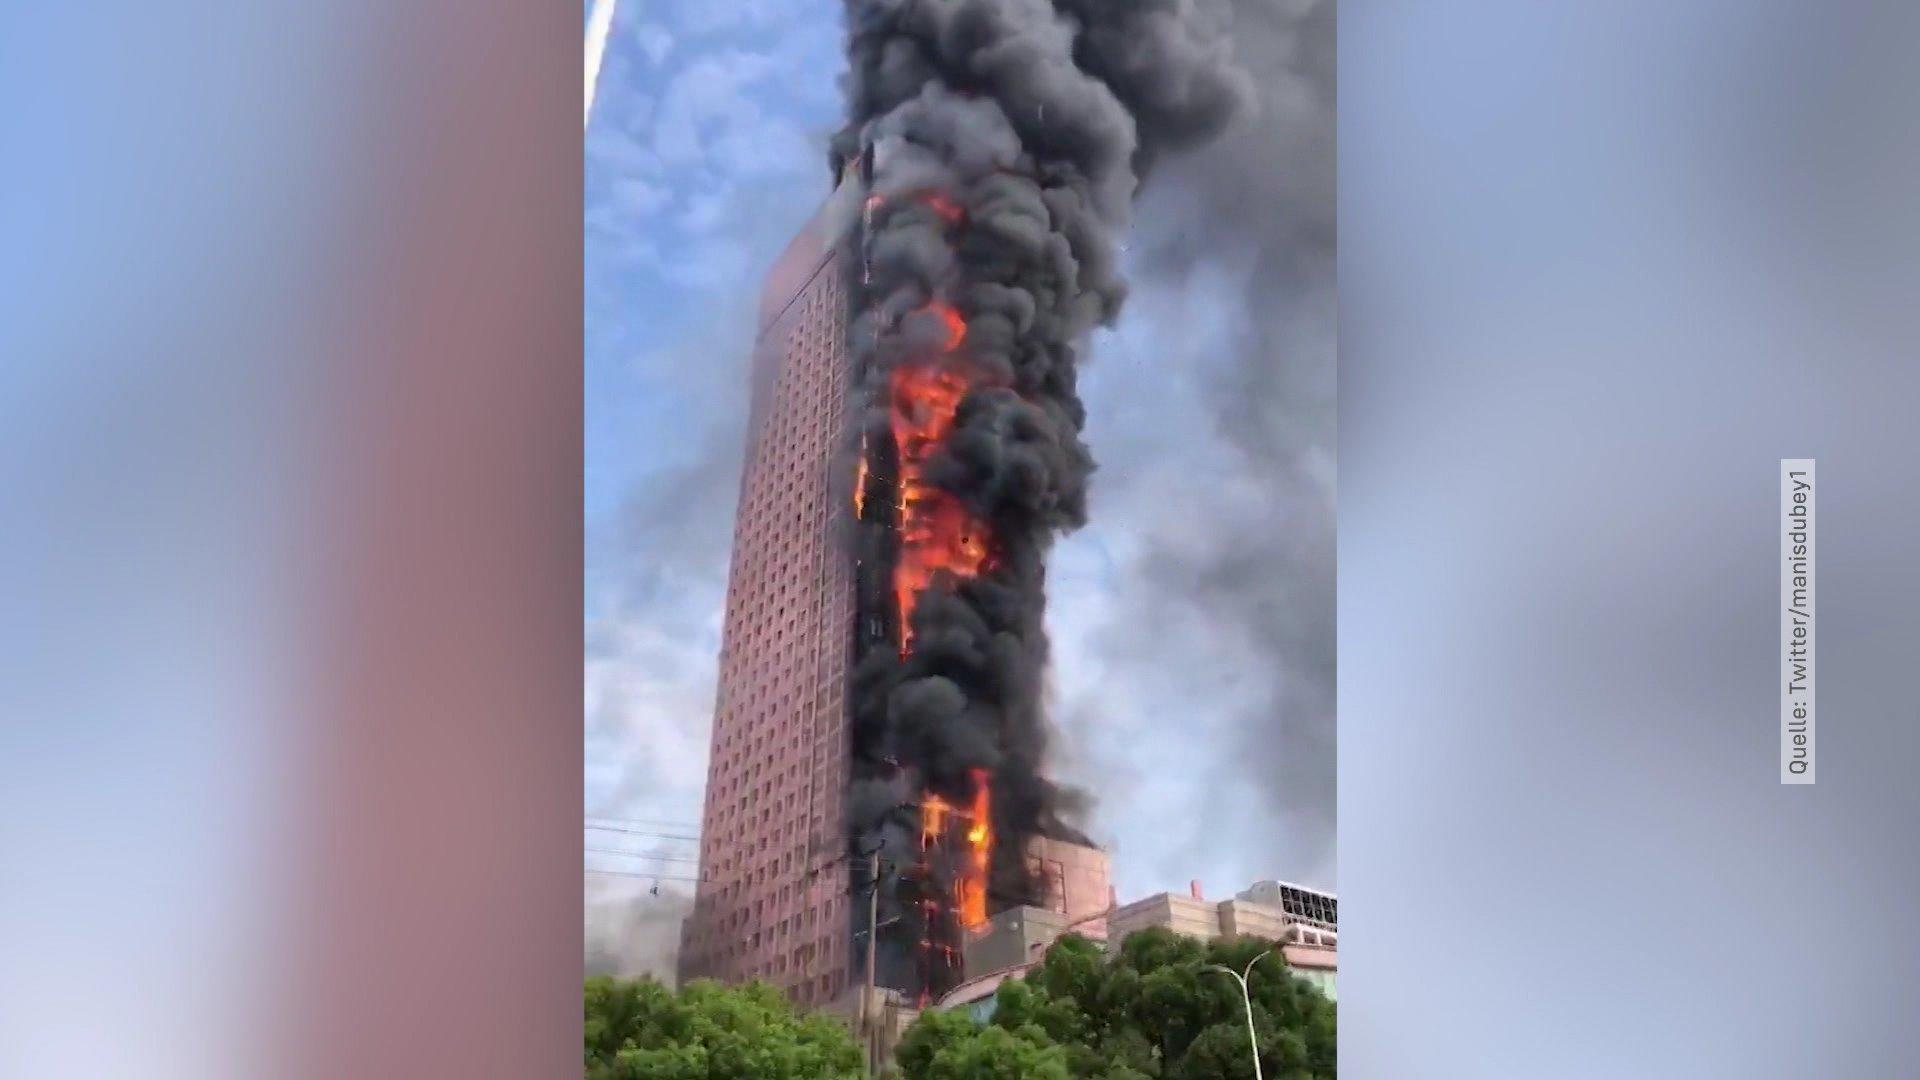 Wolkenkratzer brennt in chinesischer Millionenstadt Gebäude von China Telecom in Flammen